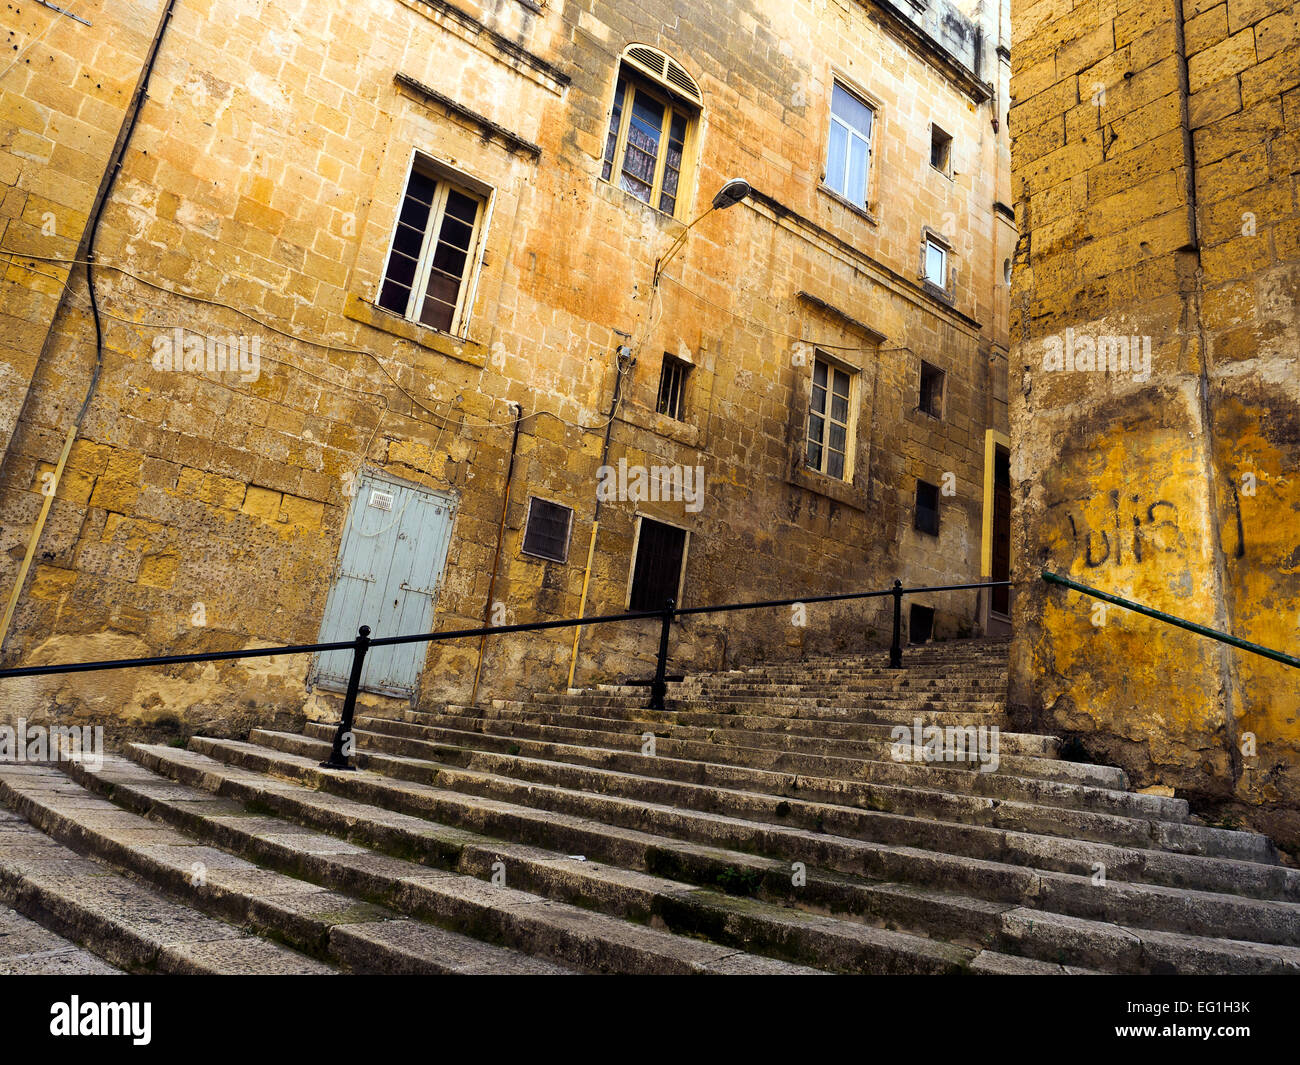 Street scene of Valletta - Malta Stock Photo